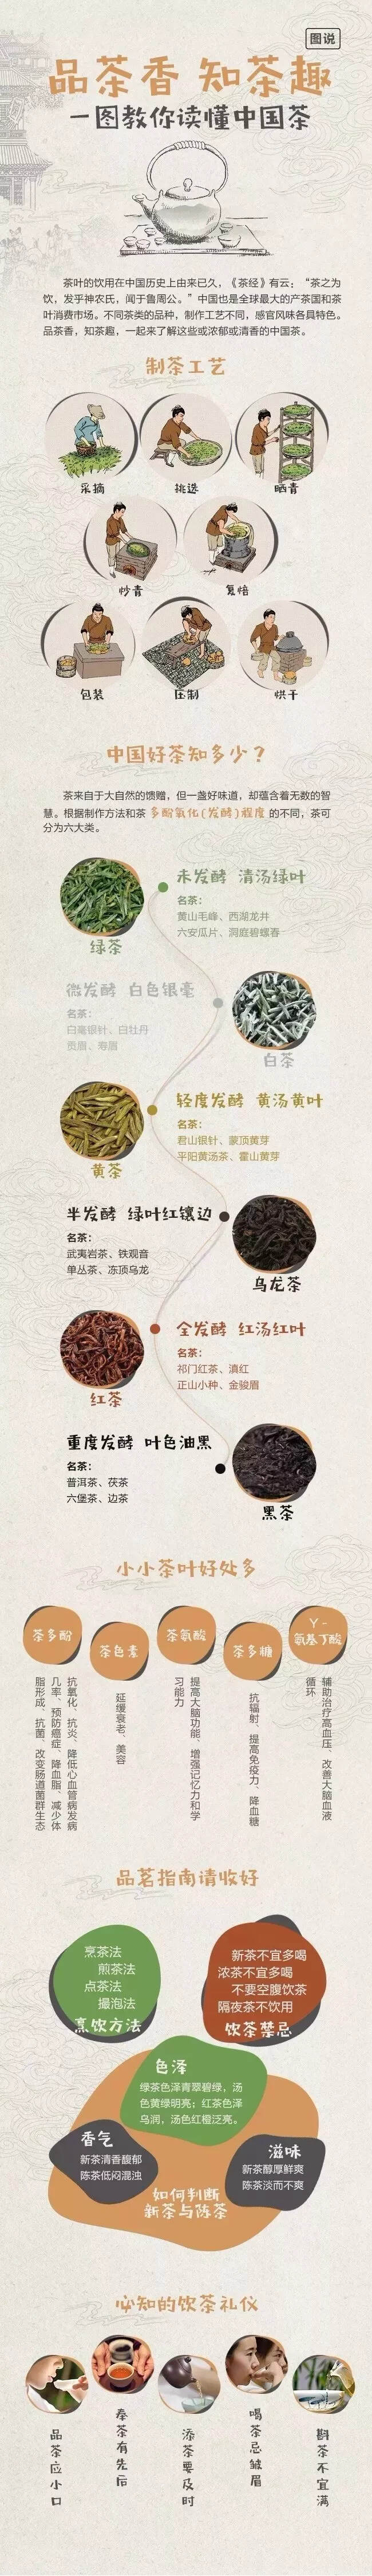 一图读懂中国茶